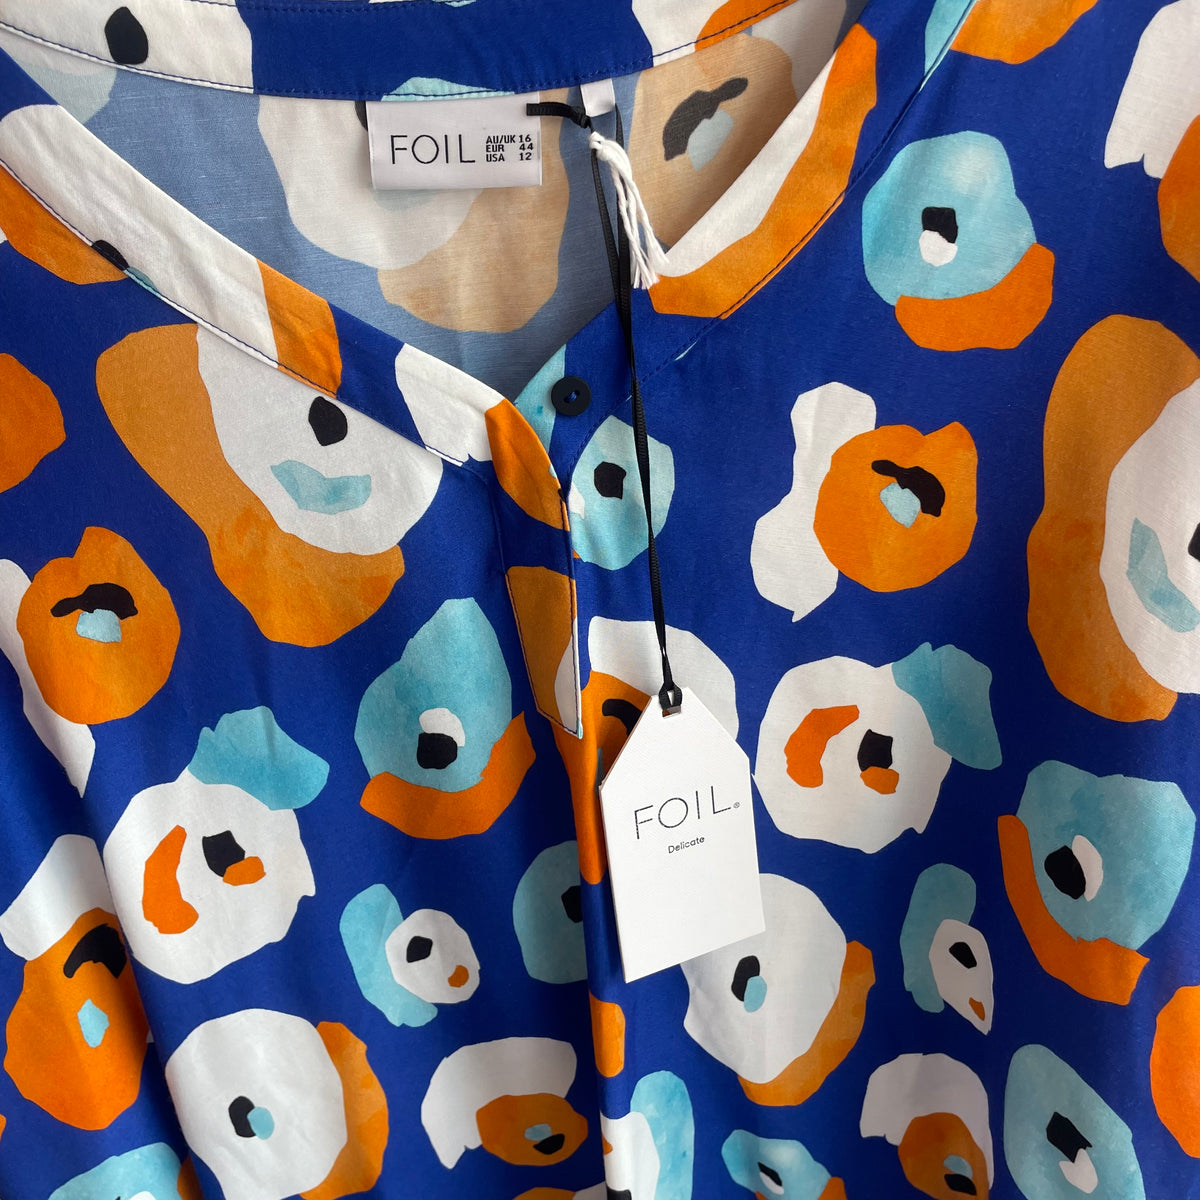 Foil 'feature act shirt' Blue/White/Orange size 16